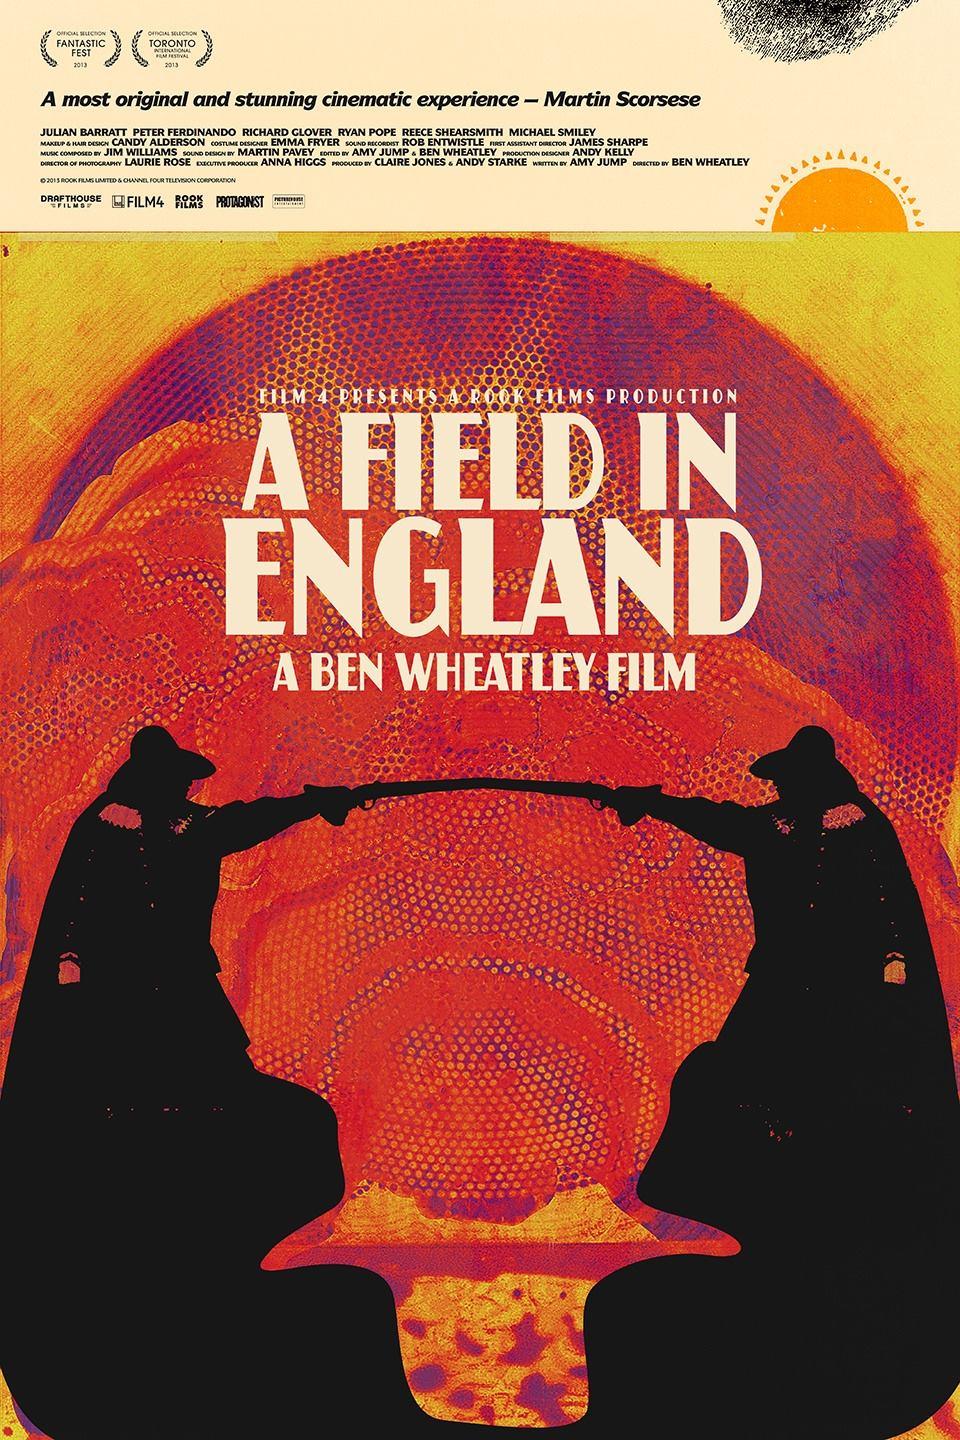 Постер фильма Поле в Англии | Field in England